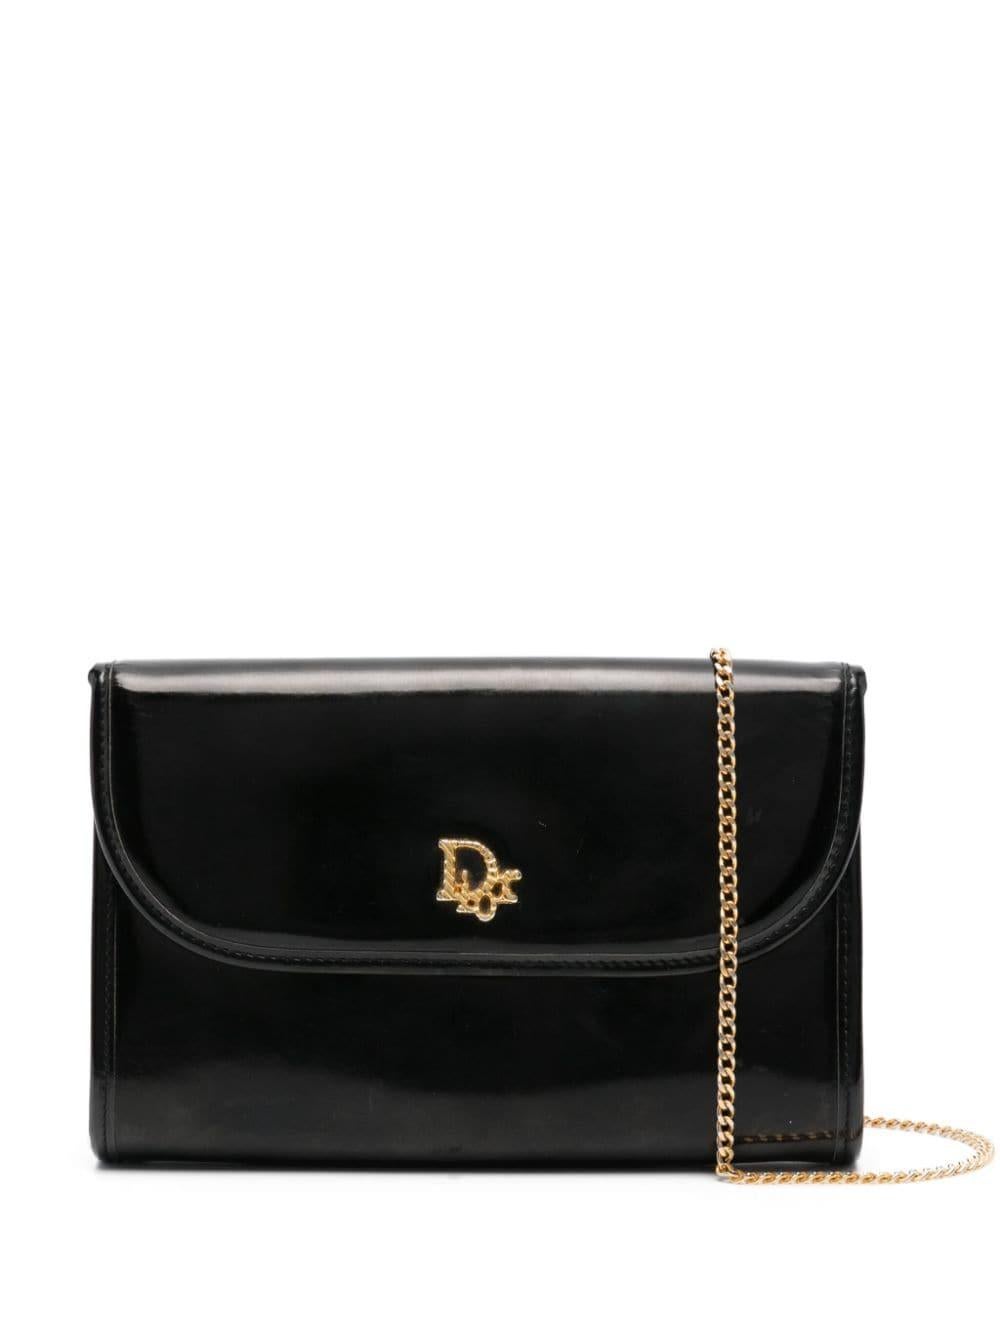 1980s Christian Dior Black Leather Shoulder Bag  2